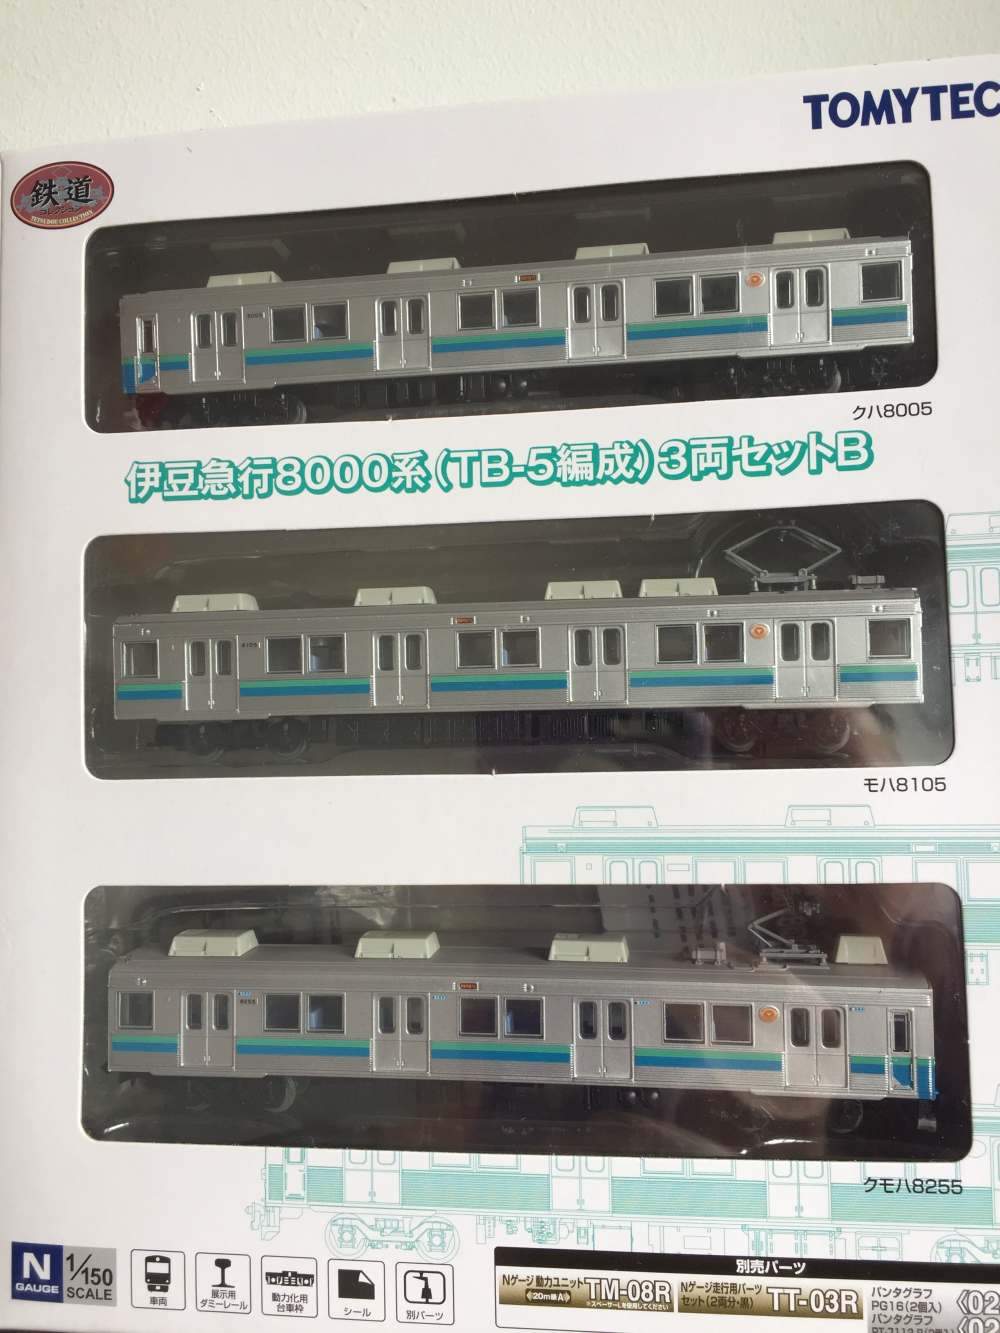 Tomytec 26667 N Train Collection Series Izukyu 8000 TB-5 Set B, Without Motor, 3pcs